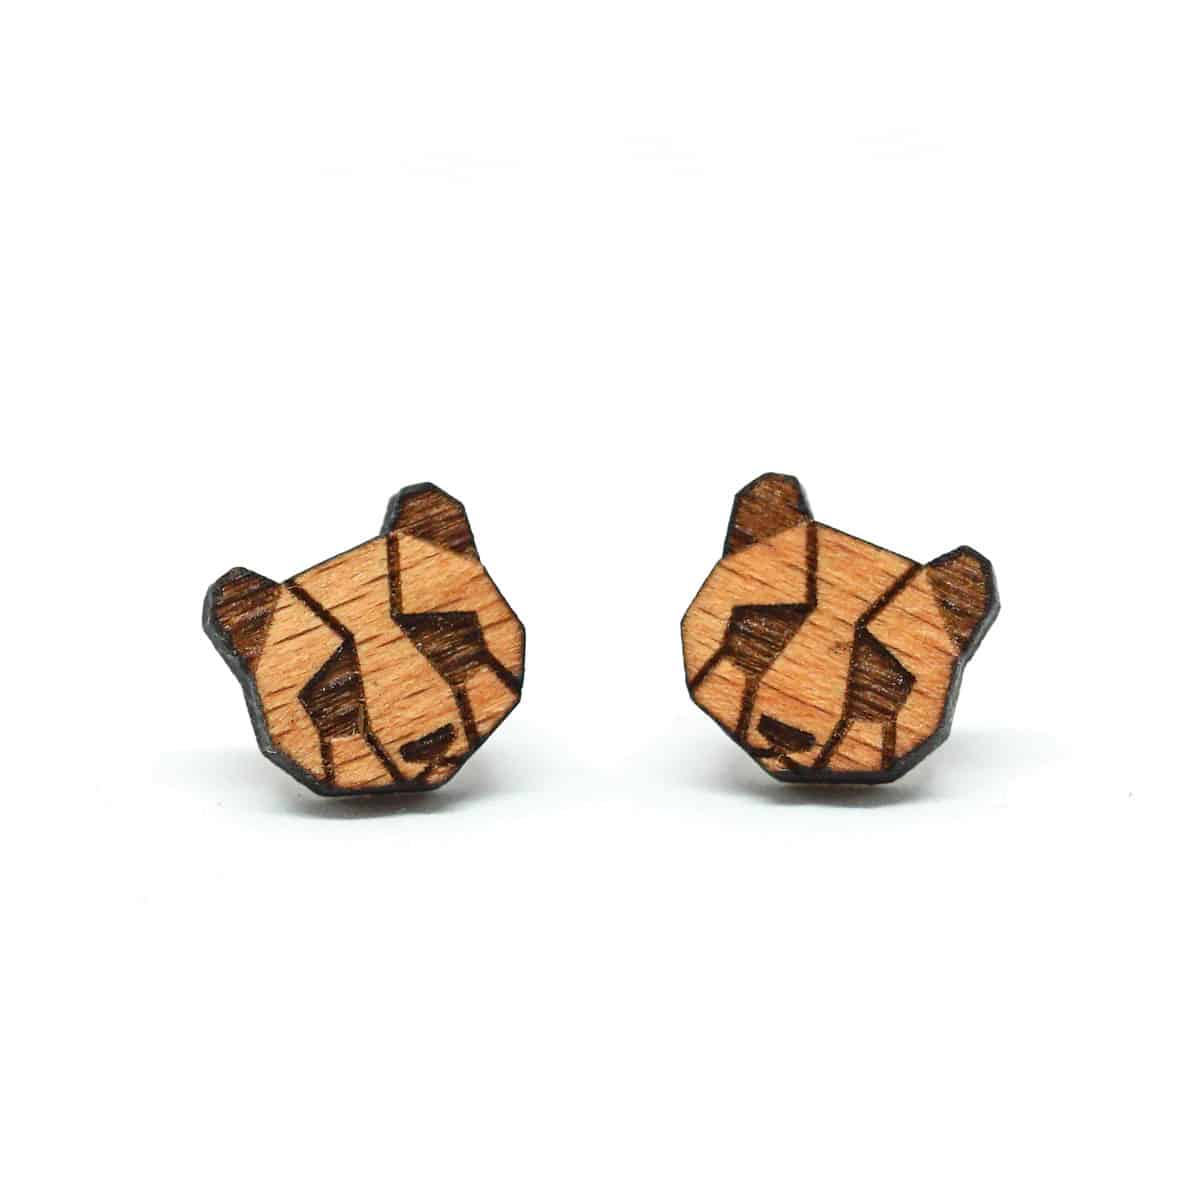 Swiss wooden ear studs in panda design